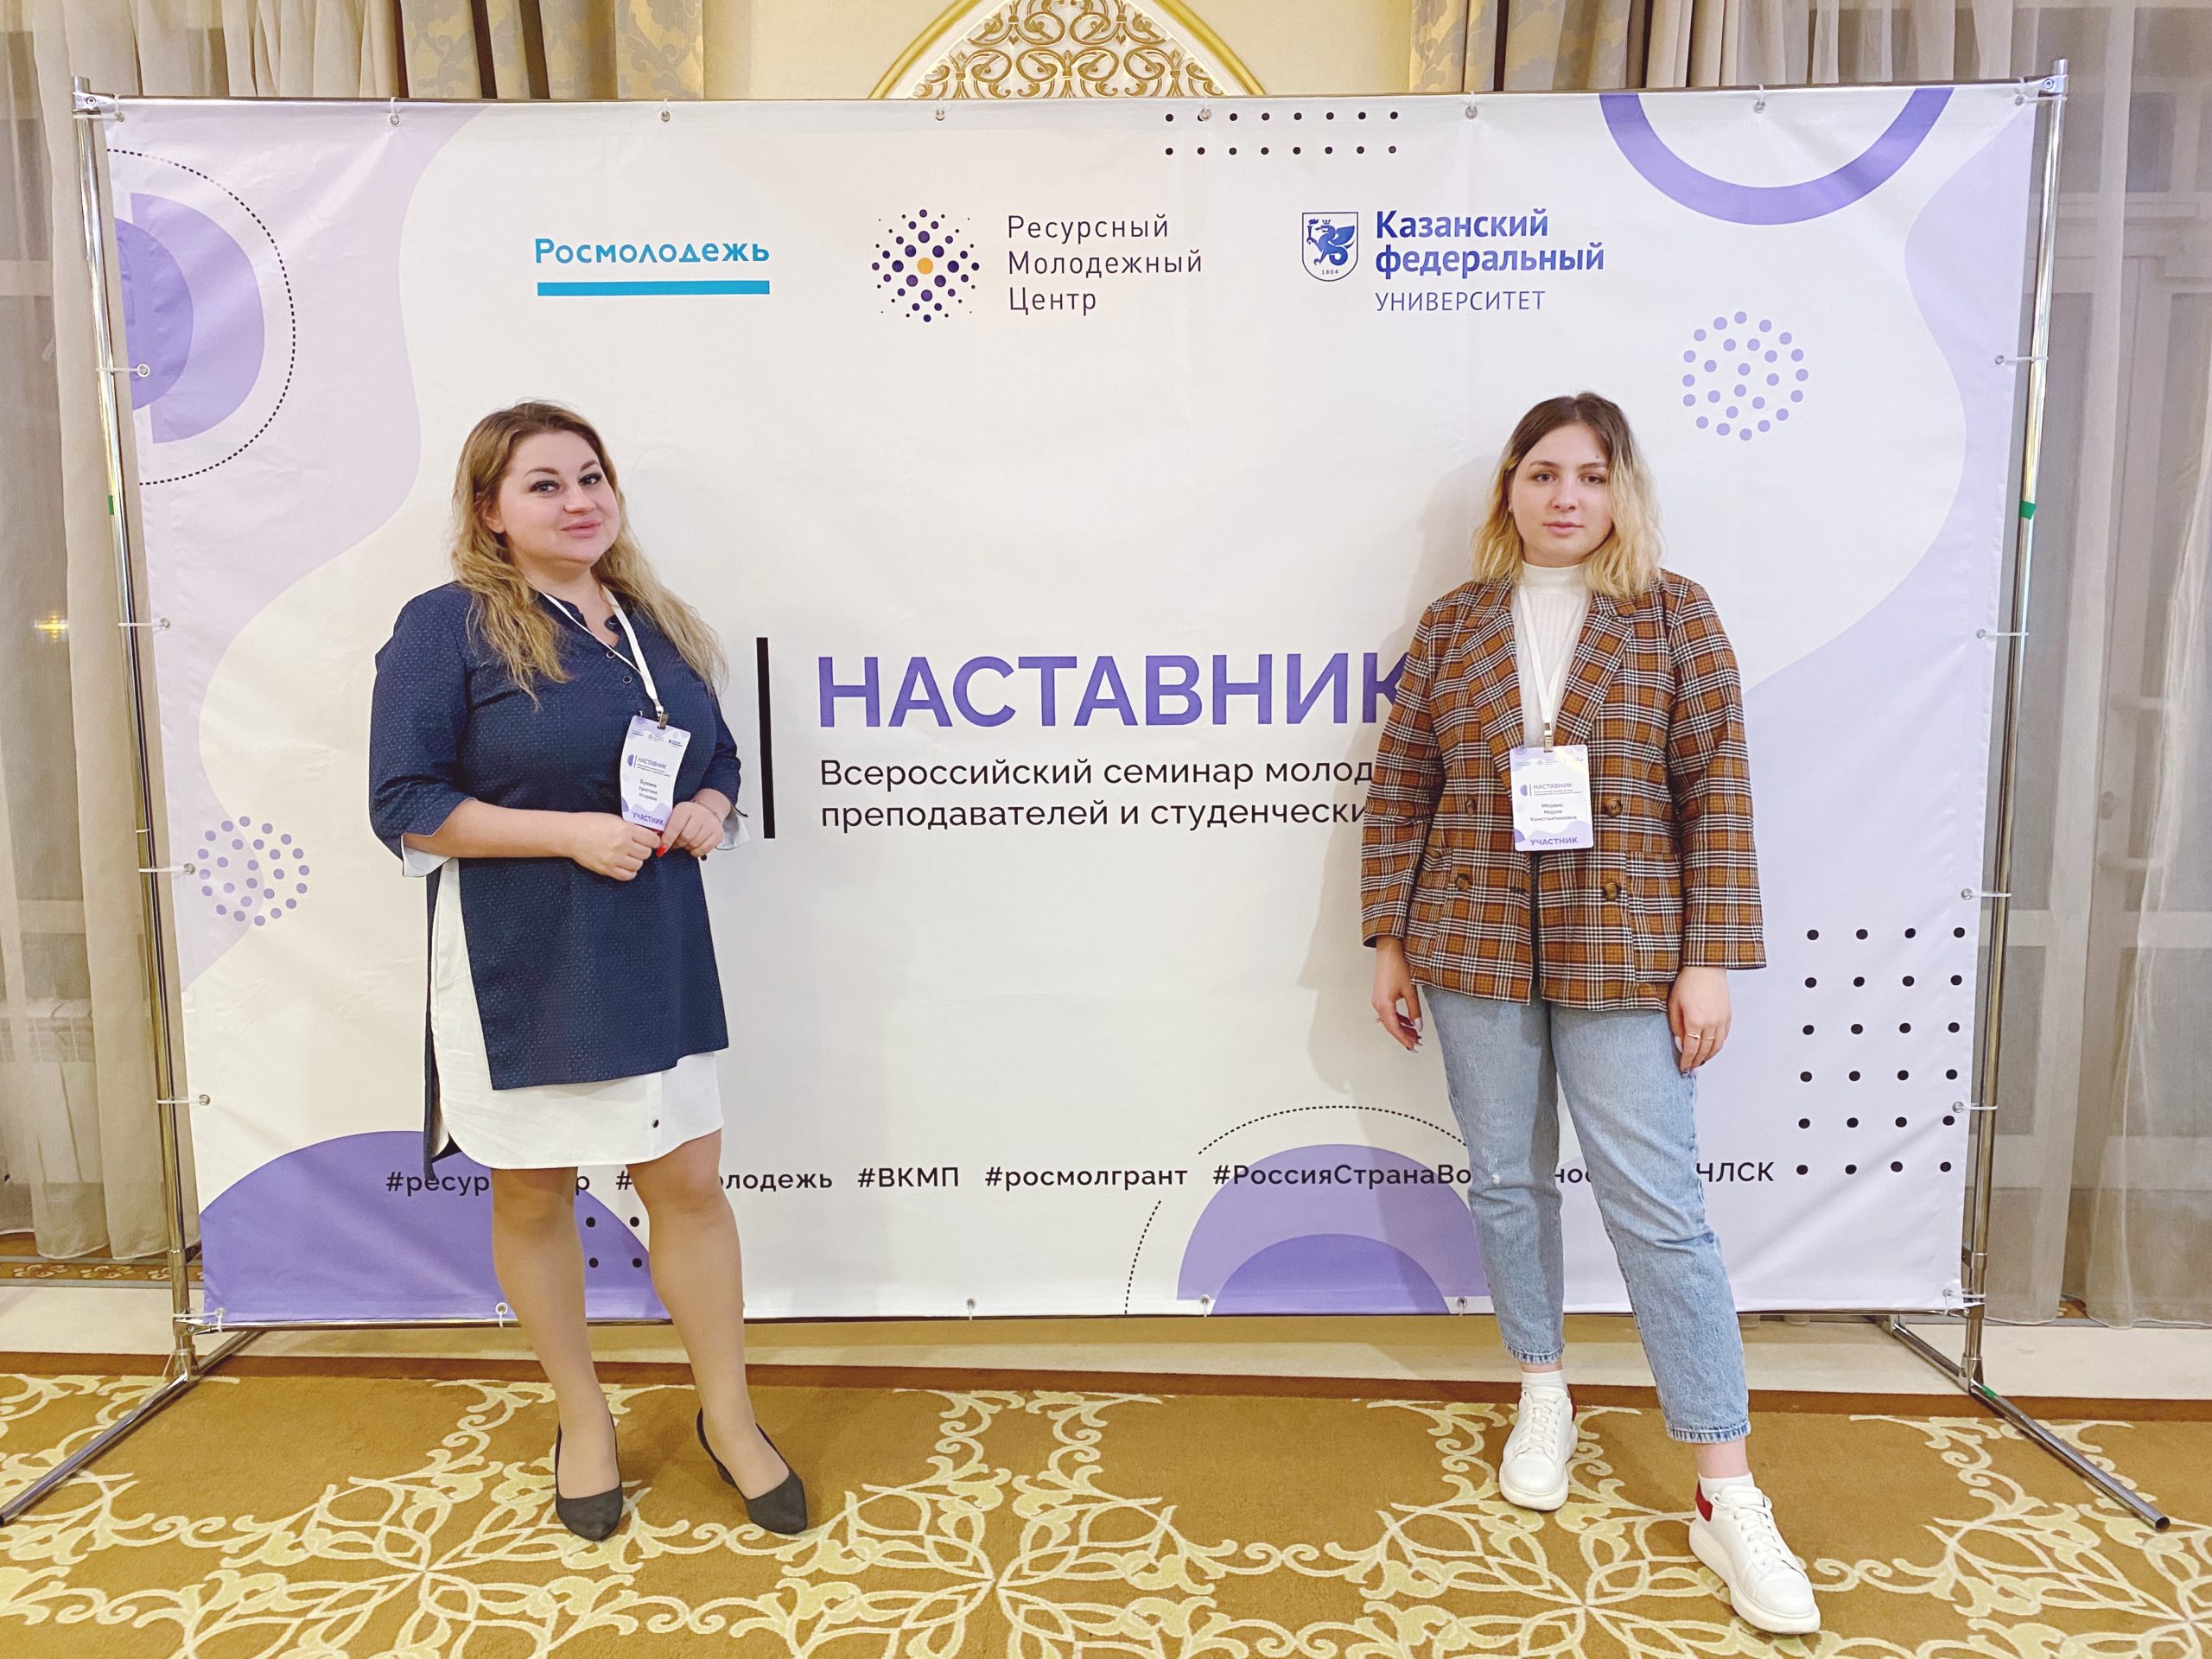 Представители Института приняли участие во Всероссийском семинаре молодых преподавателей и студенческих лидеров "Наставник"